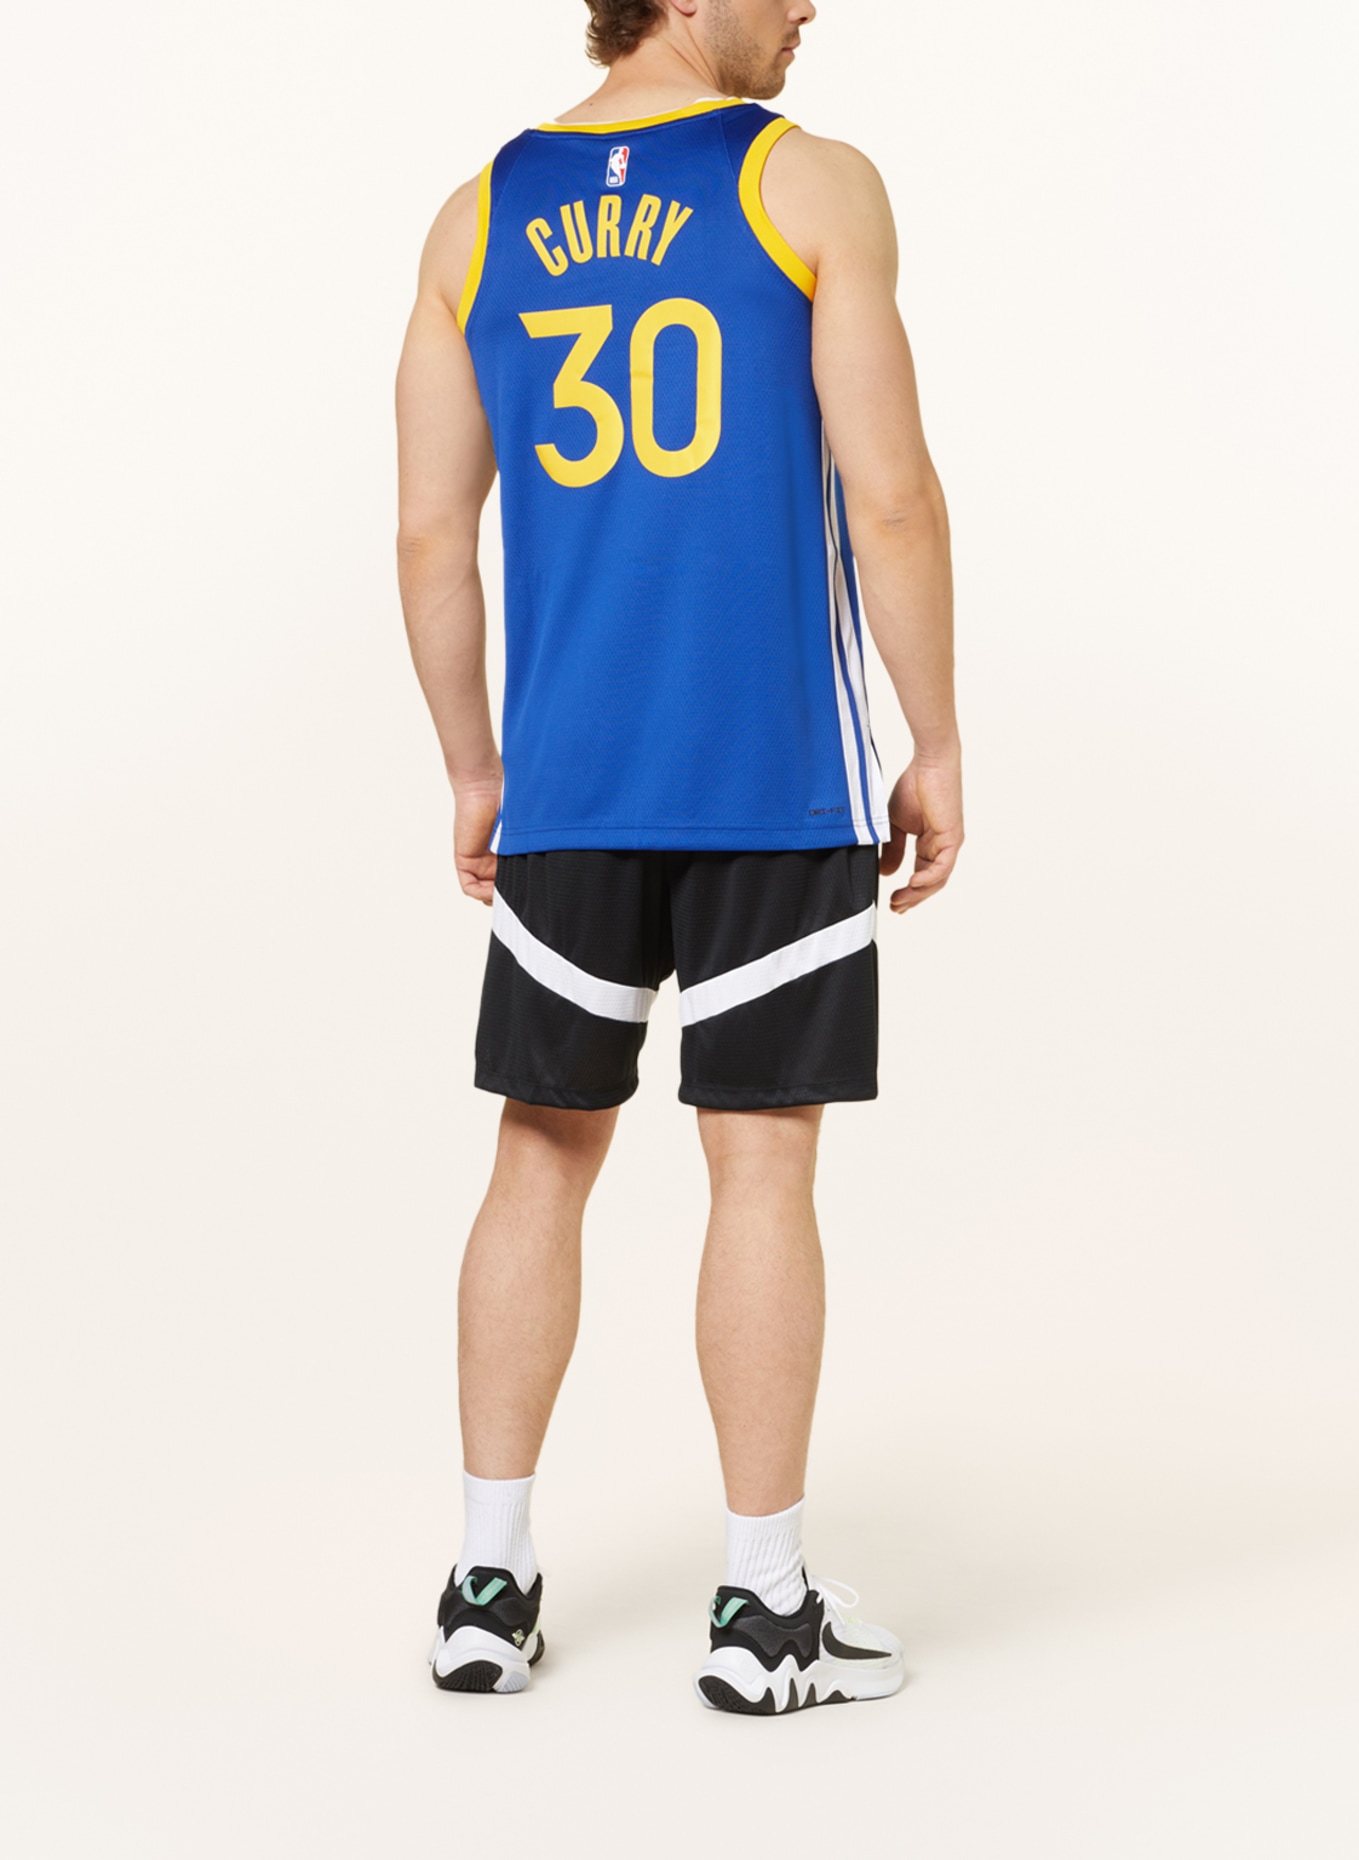 Yellow Blue Basketball Shirt, Jersey Basketball Jersey